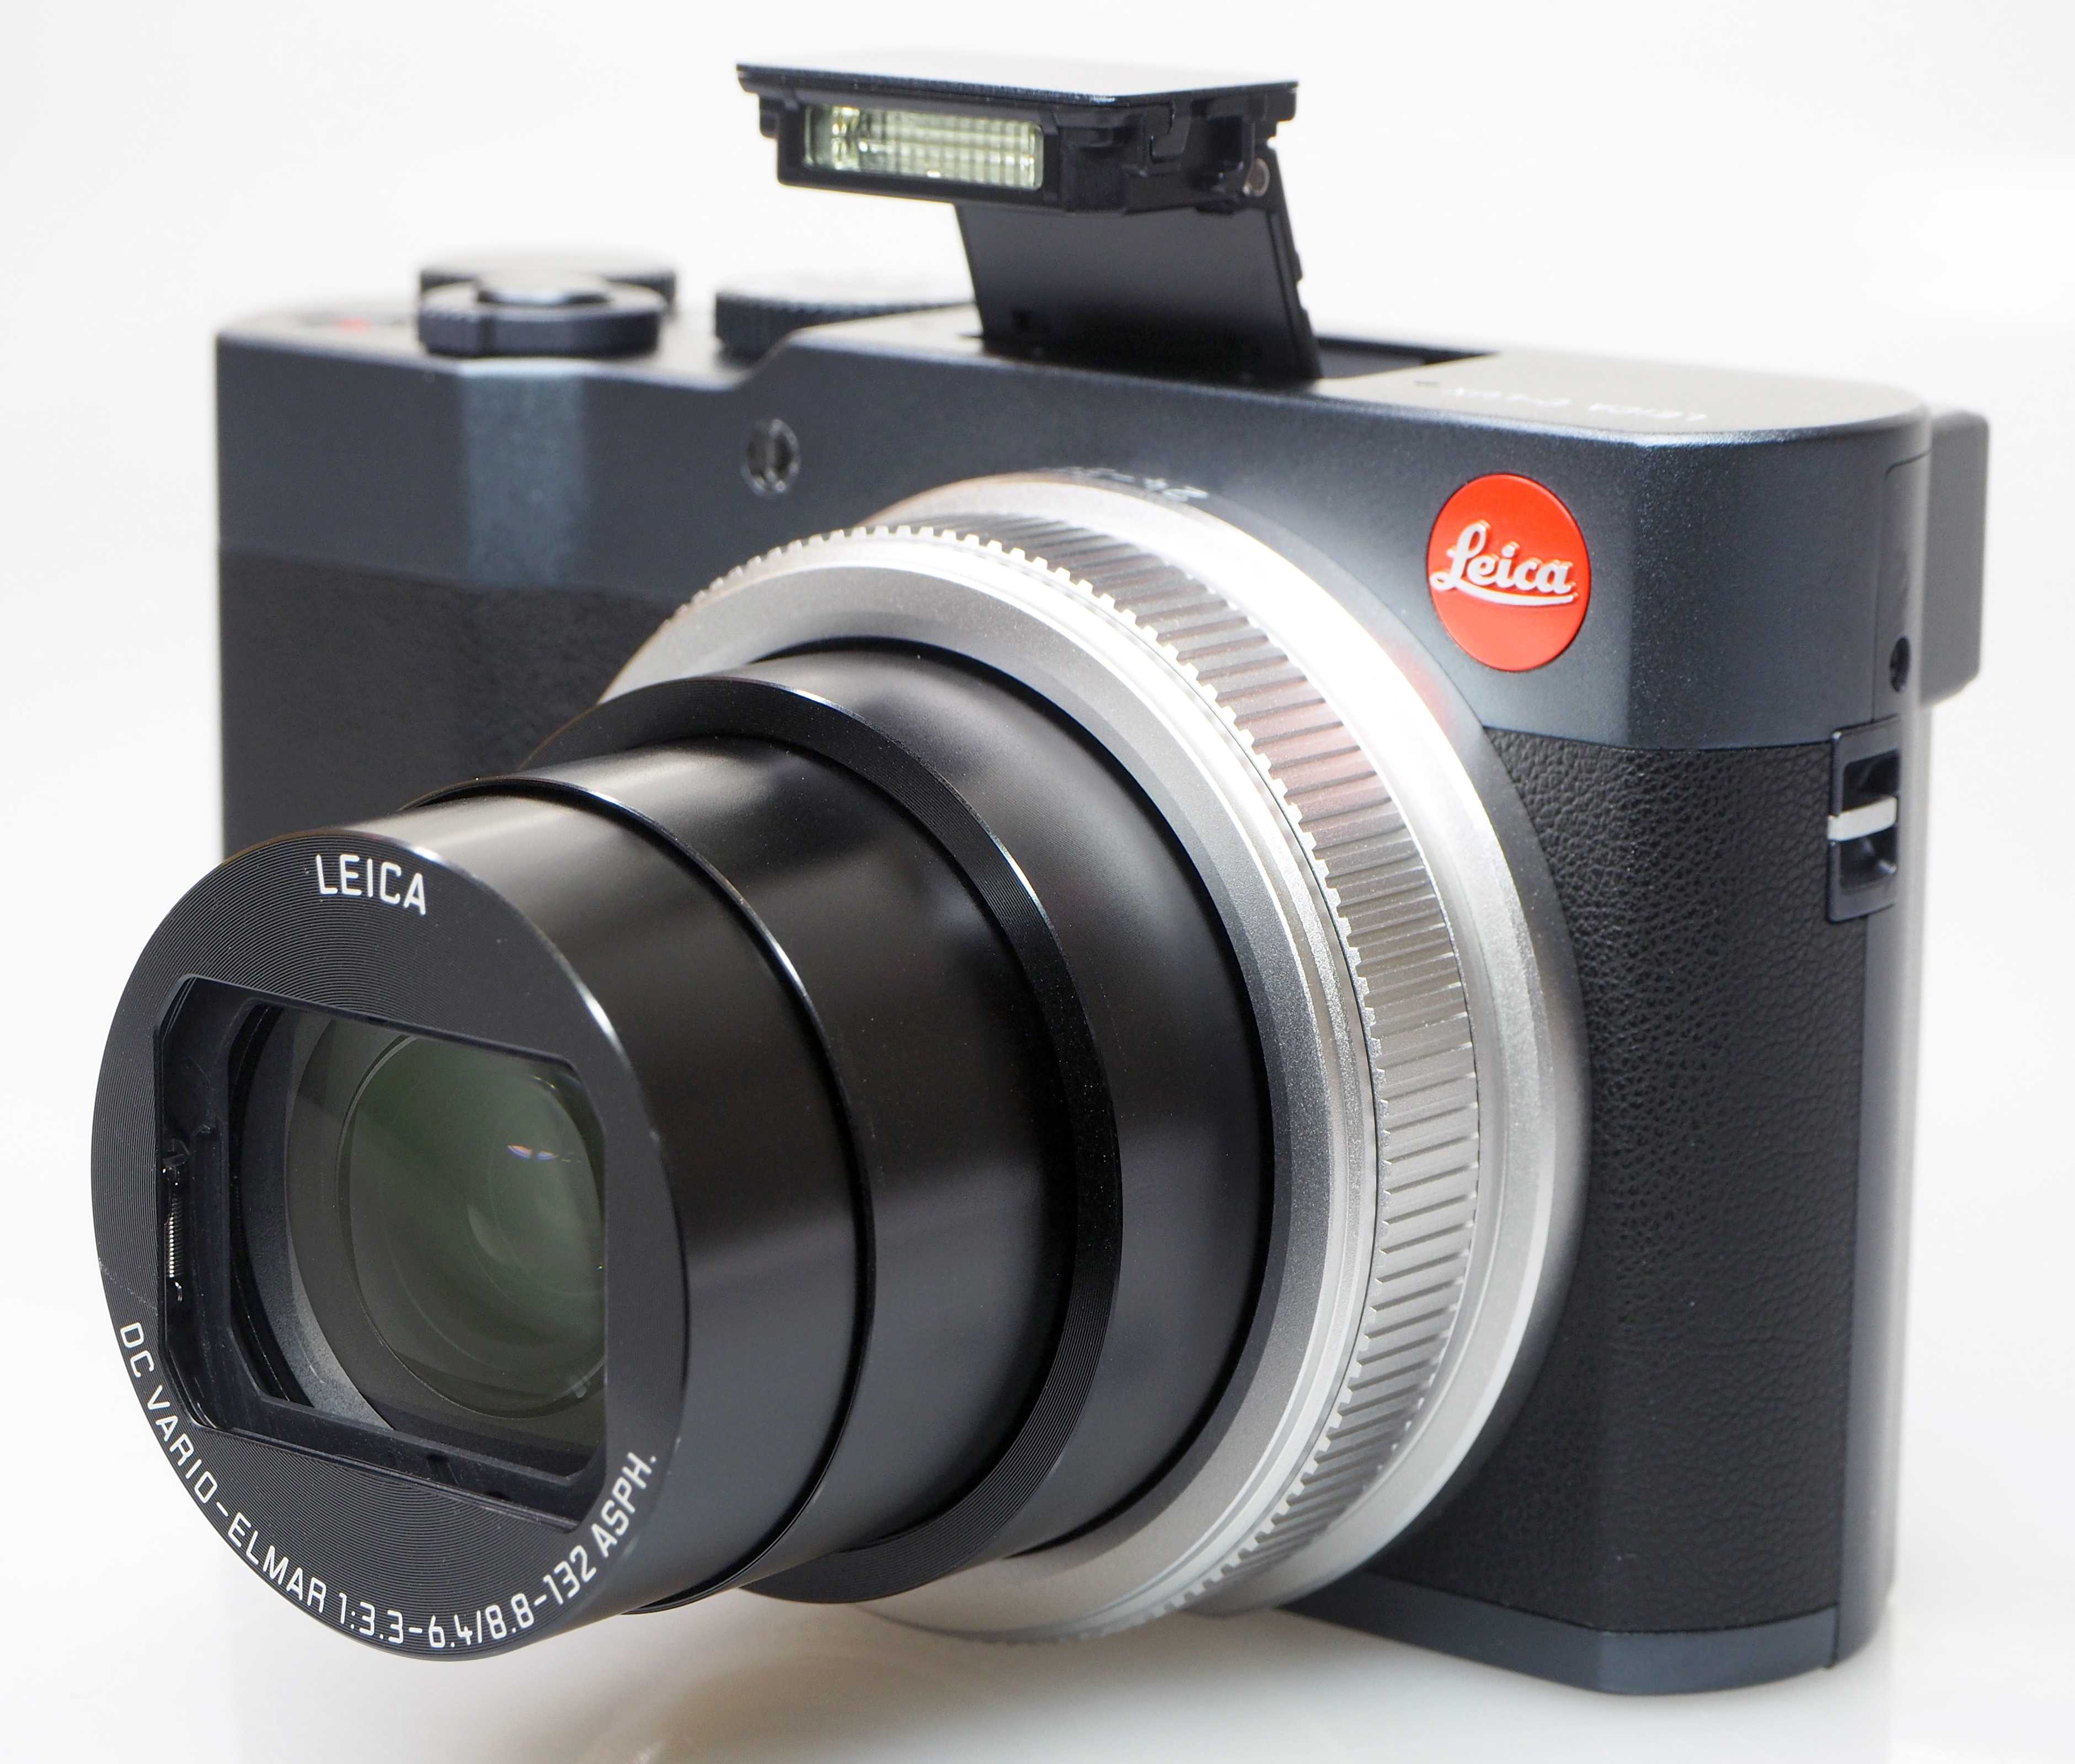 Цифровой фотоаппарат Leica V-LUX 3 - подробные характеристики обзоры видео фото Цены в интернет-магазинах где можно купить цифровую фотоаппарат Leica V-LUX 3